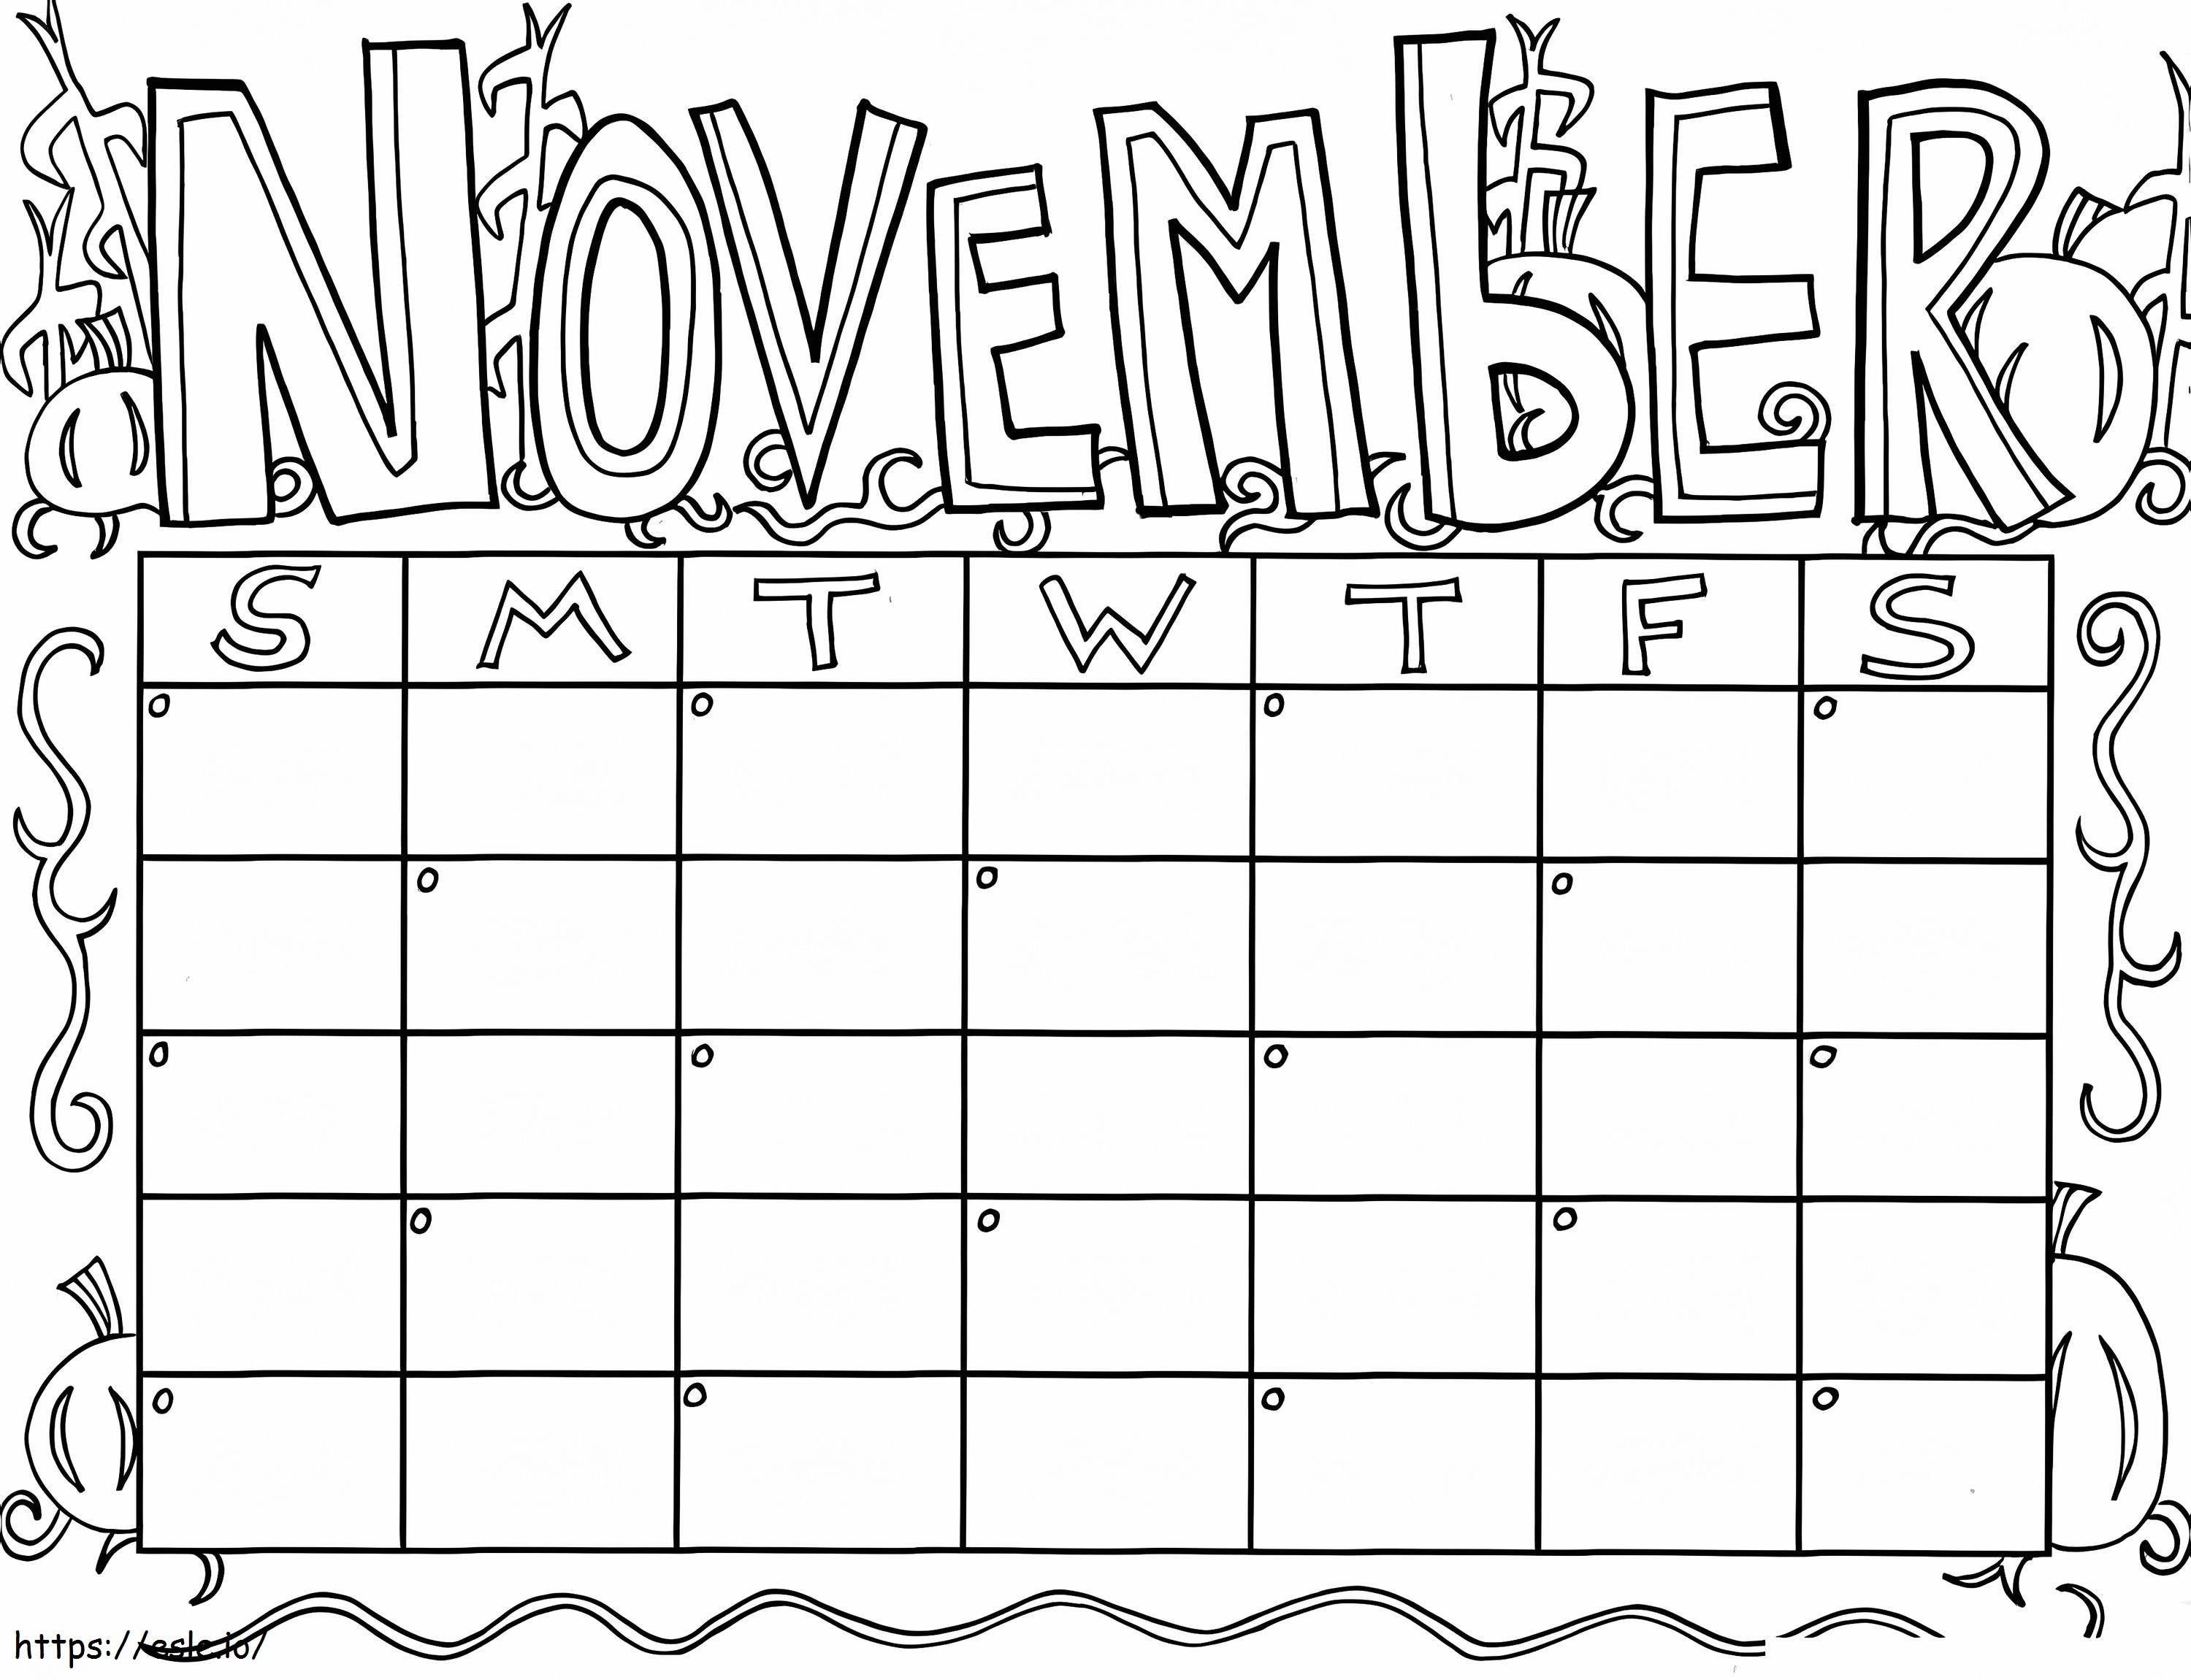 November-Kalender ausmalbilder